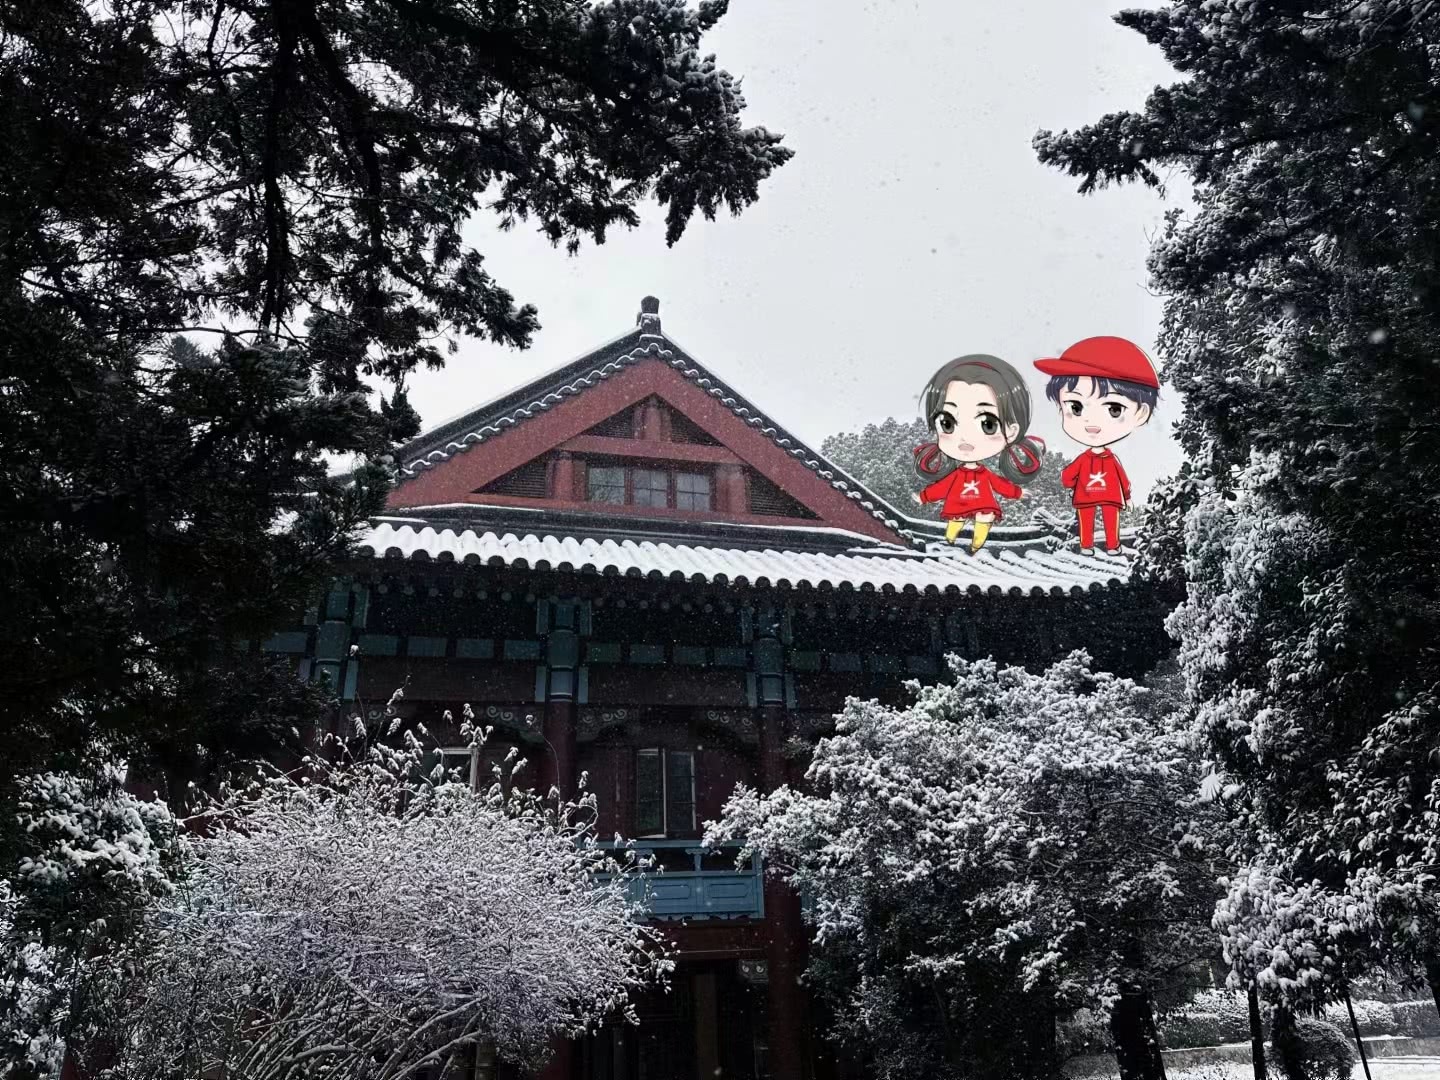 白雪映绿叶，绿树衬红墙，古朴的随园，美丽的南师。南京师范大学 艾欣宇 摄